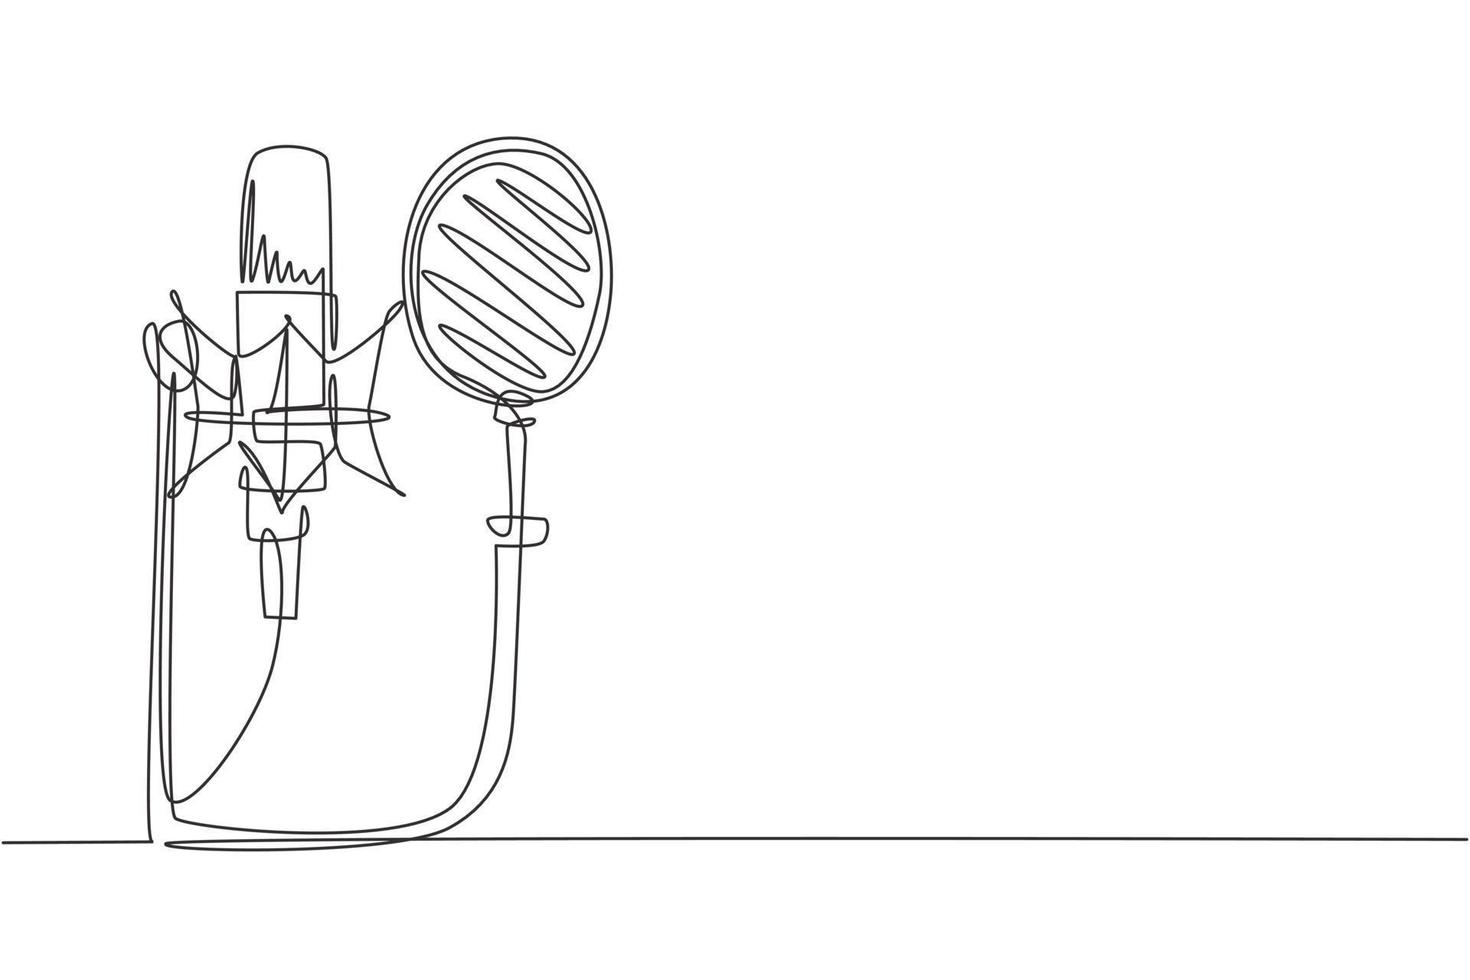 singolo oggetto tecnologico di disegno a linea, concetto di attrezzatura per la registrazione del suono. microfono da studio argento e protezione anti-pop nera sull'asta del microfono. illustrazione vettoriale grafica moderna con disegno a linea continua